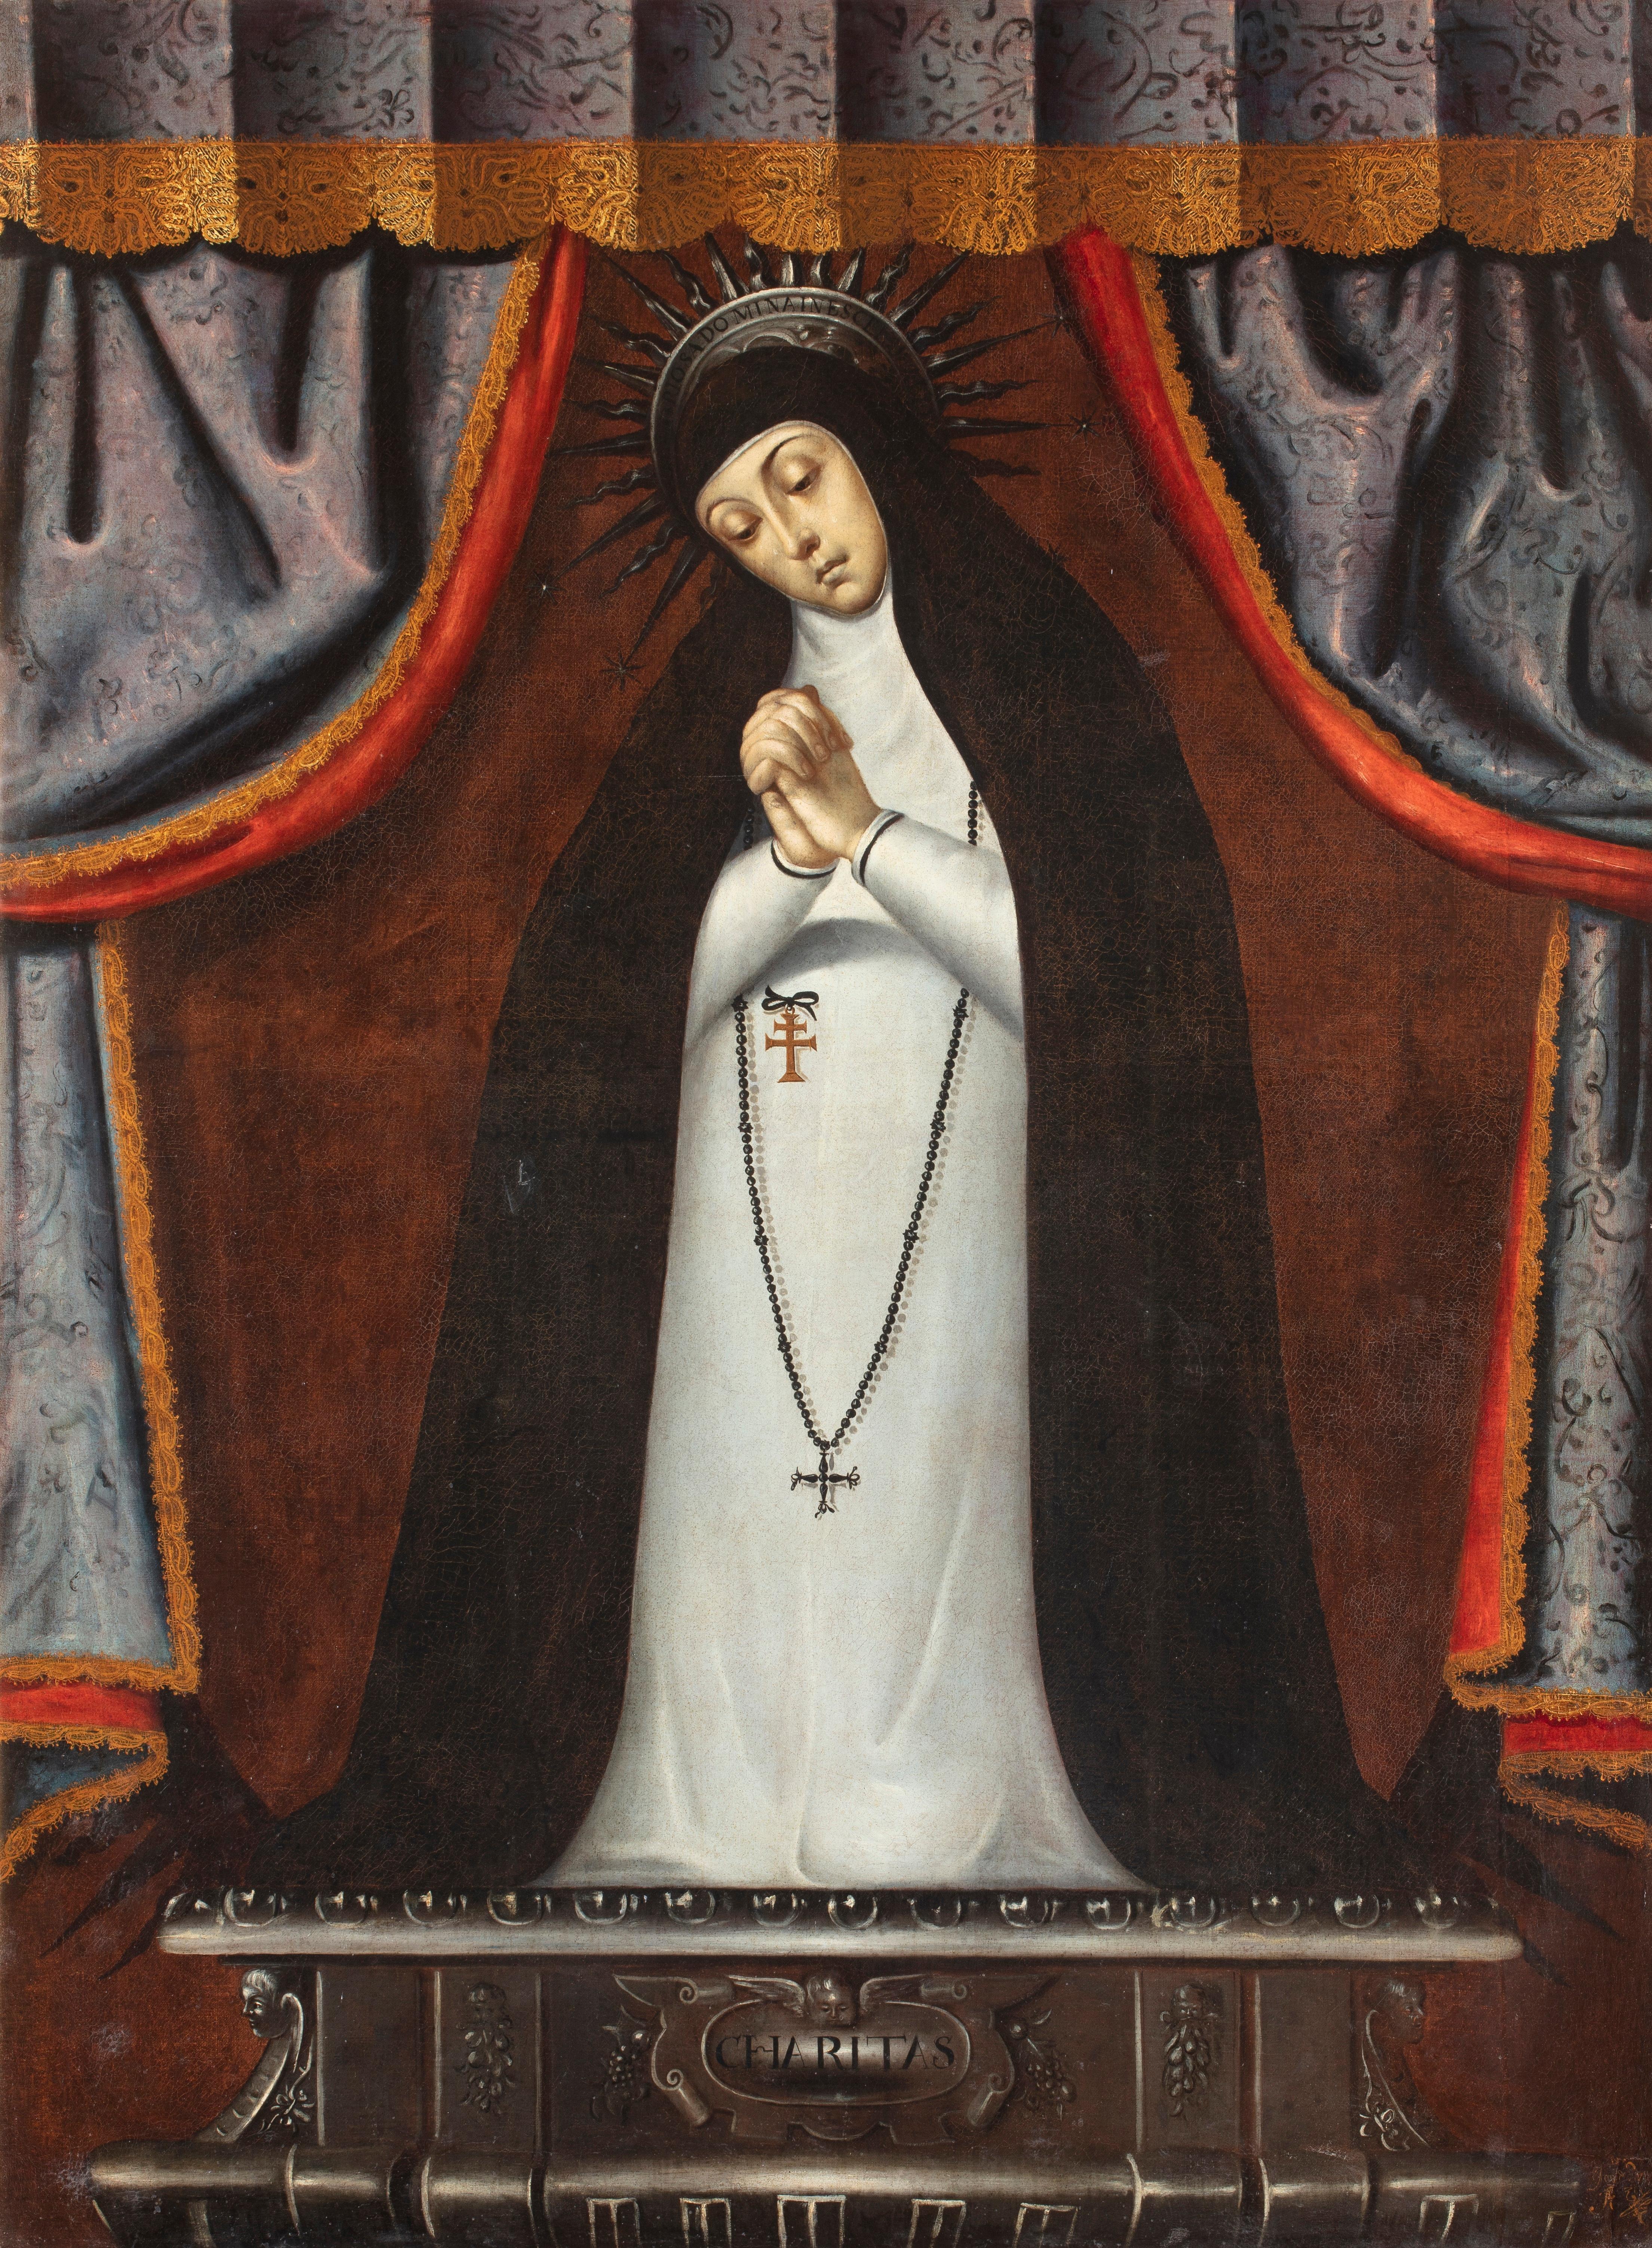 Mexikanische Maestro Jungfrau der Einsamkeit, Öl auf Leinwand, 17. Jahrhundert – Painting von Mexican Maestro of the 17th century